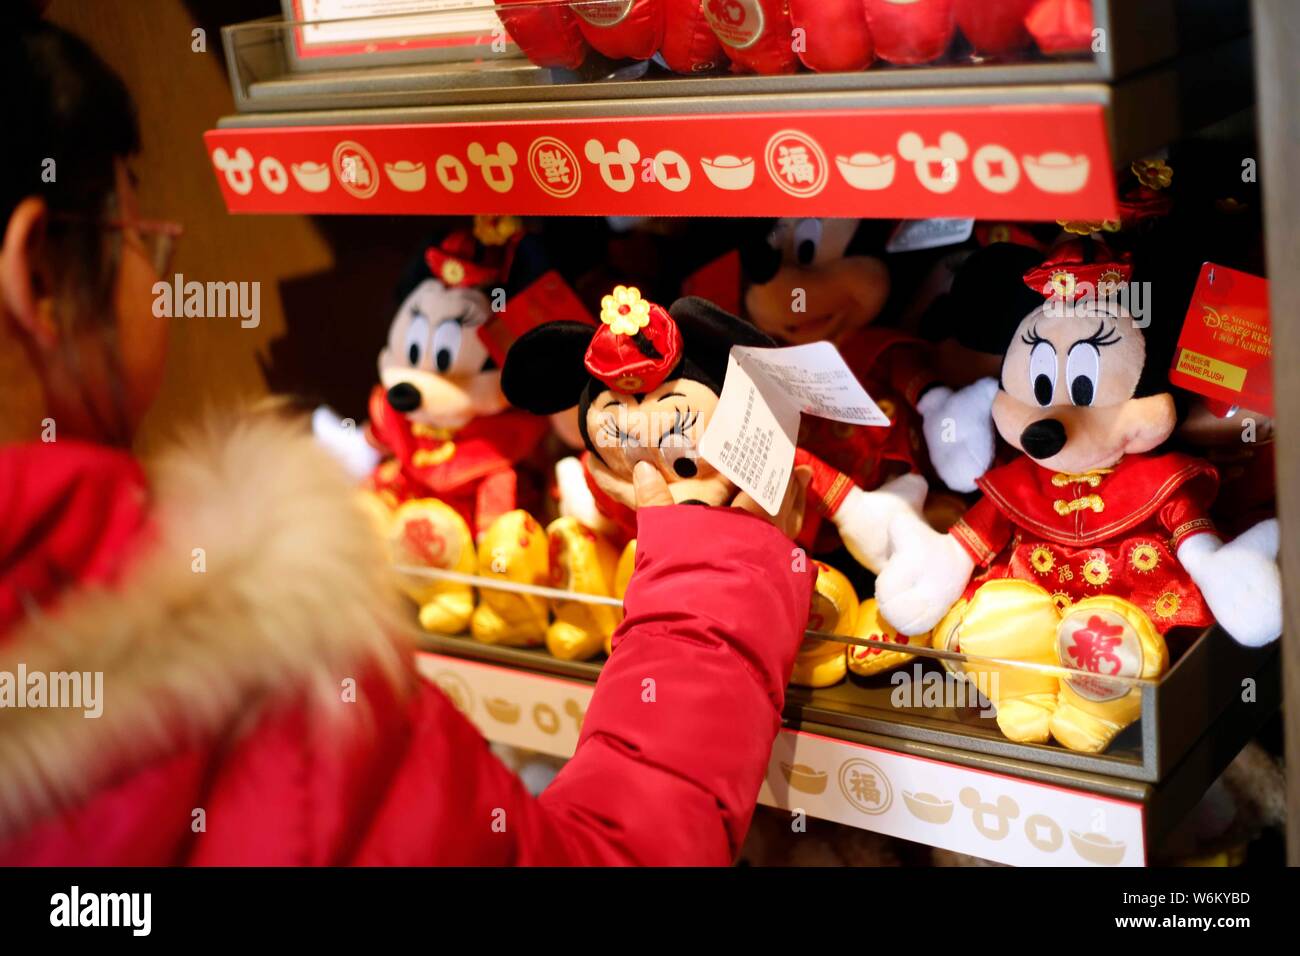 Mickey and minnie mouse toys fotografías e imágenes de alta resolución -  Alamy